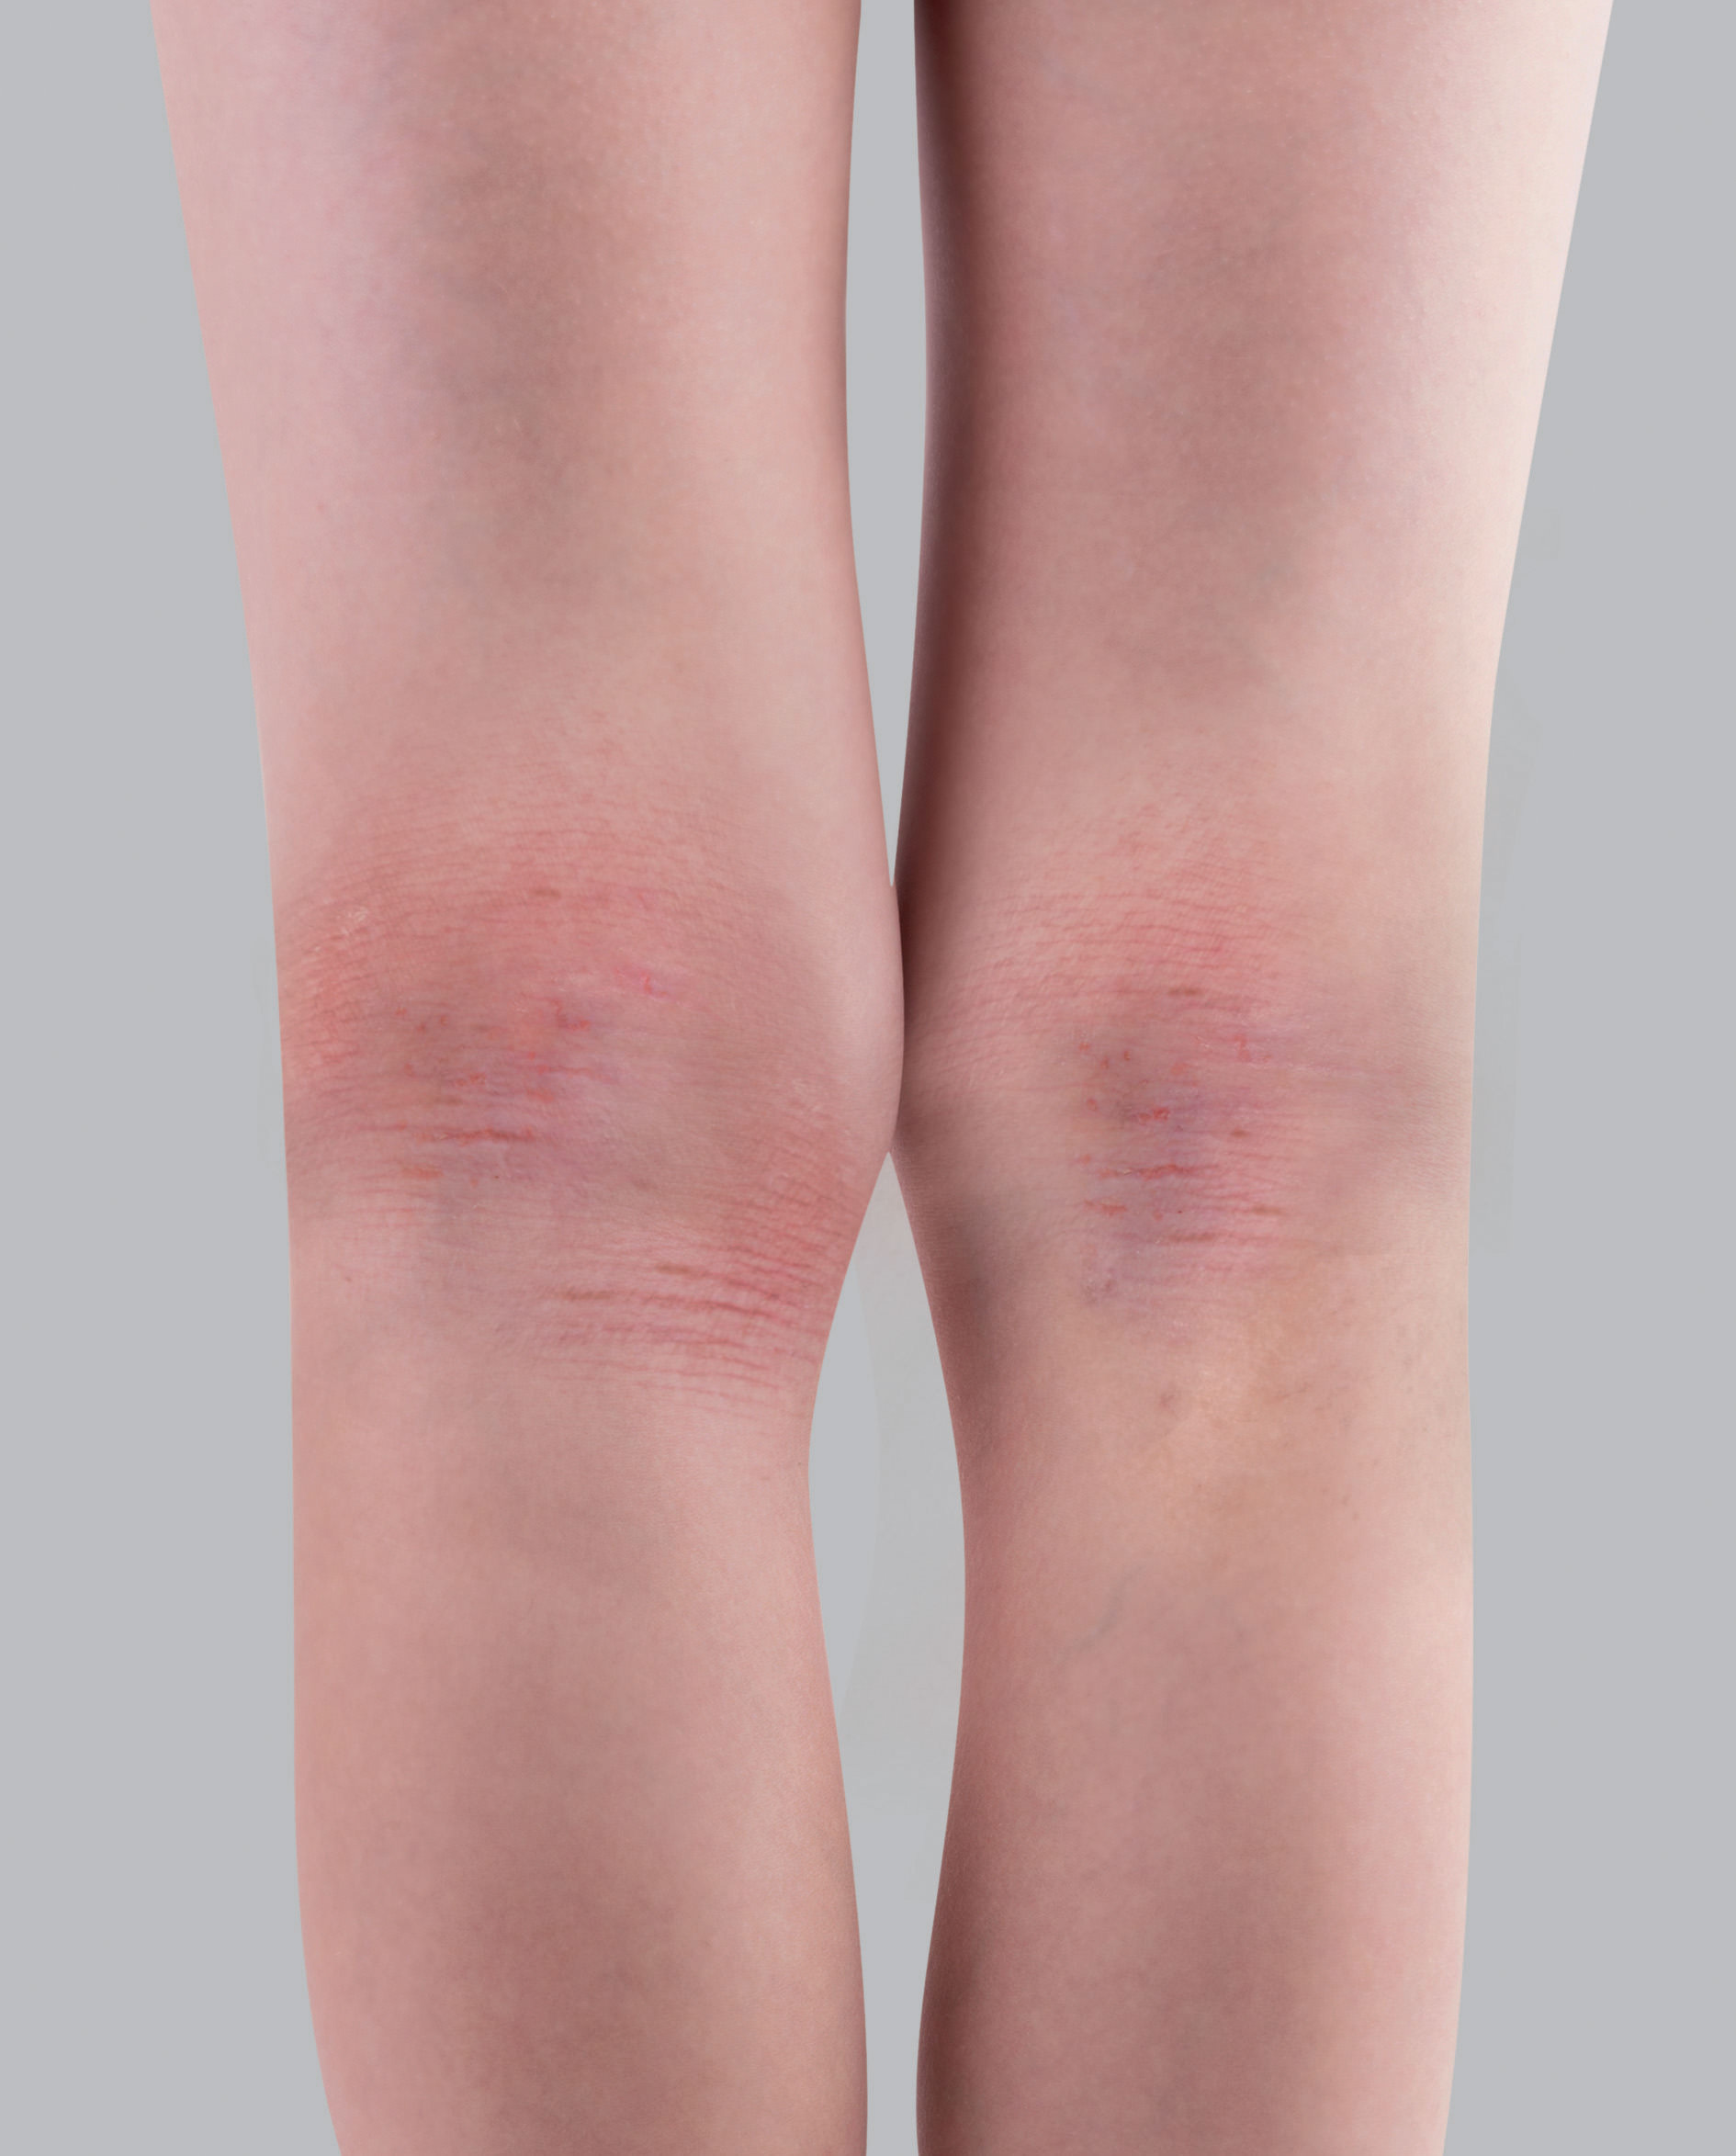 Síntomas del eczema atópico: engrosamiento de la piel o liquenificación